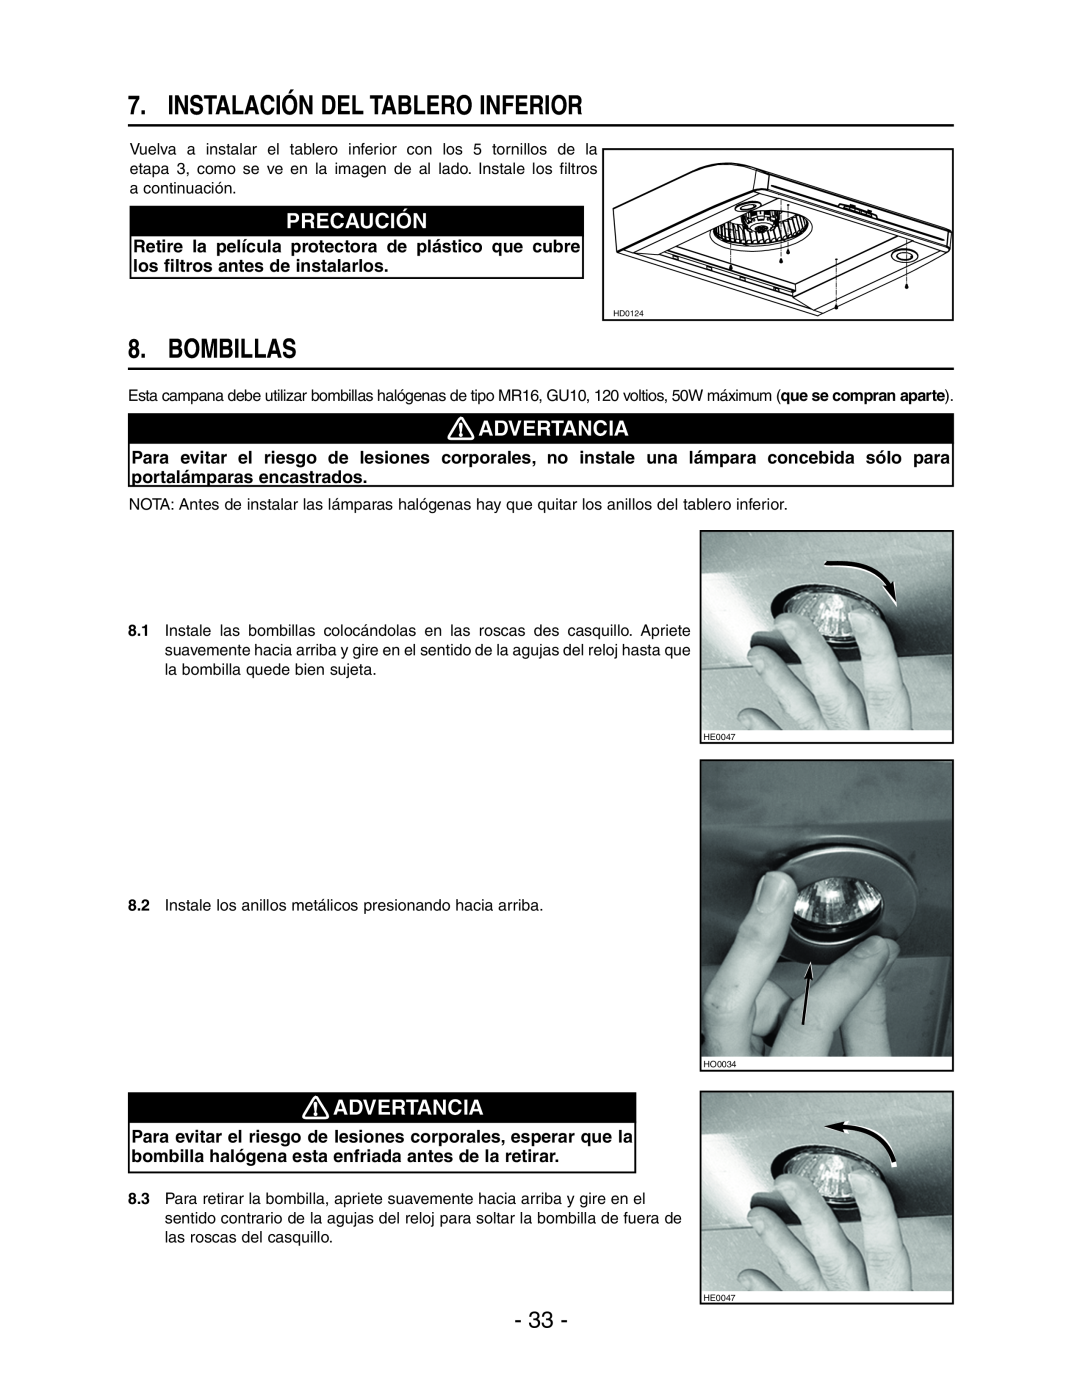 Broan E661 manual Instalación Del Tablero Inferior, Bombillas, Precaución, Advertancia 